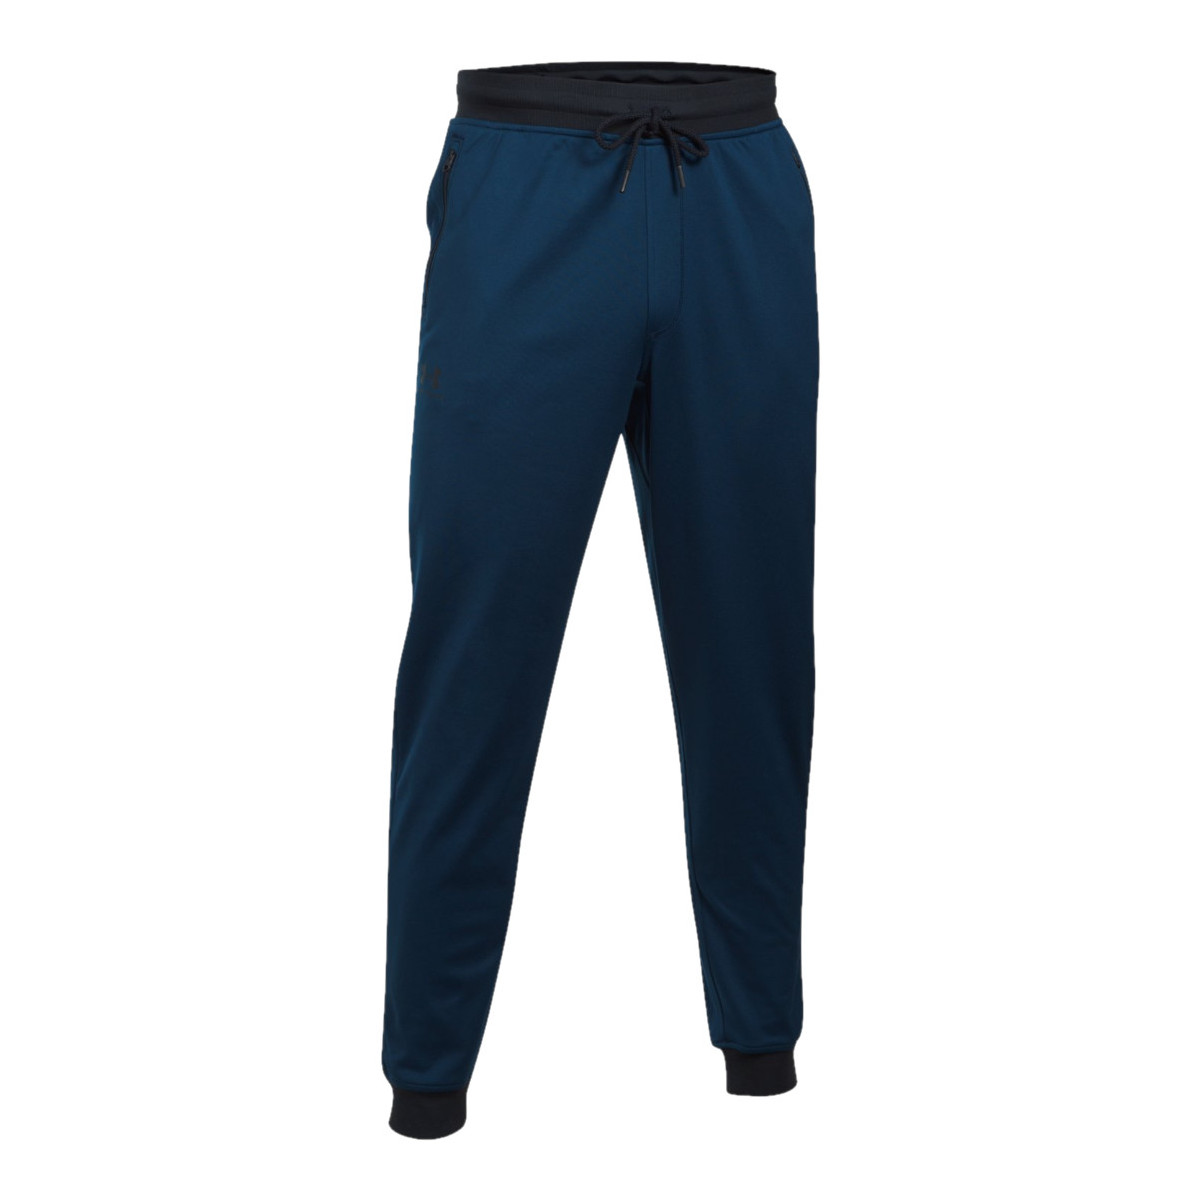 Textil Muži Teplákové kalhoty Under Armour Sportstyle Jogger Modrá